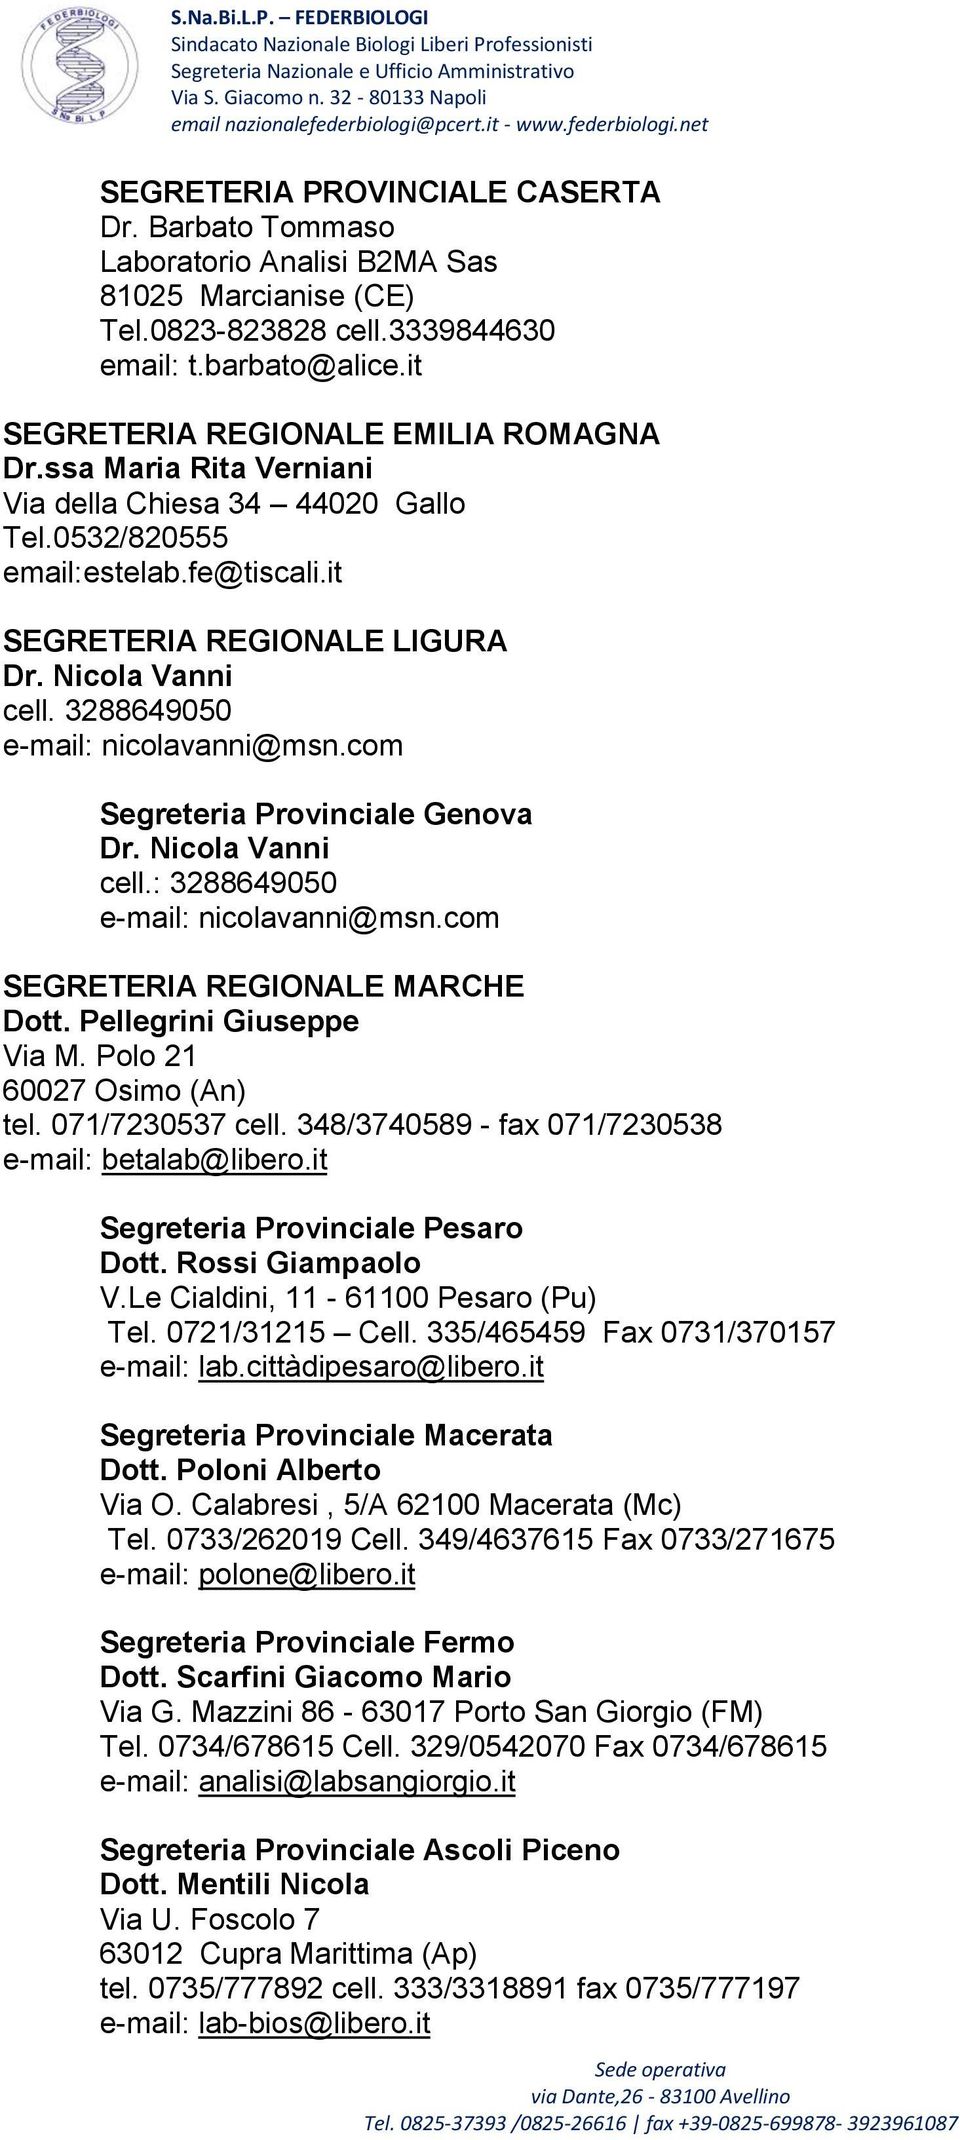 com Segreteria Provinciale Genova Dr. Nicola Vanni cell.: 3288649050 e-mail: nicolavanni@msn.com SEGRETERIA REGIONALE MARCHE Dott. Pellegrini Giuseppe Via M. Polo 21 60027 Osimo (An) tel.